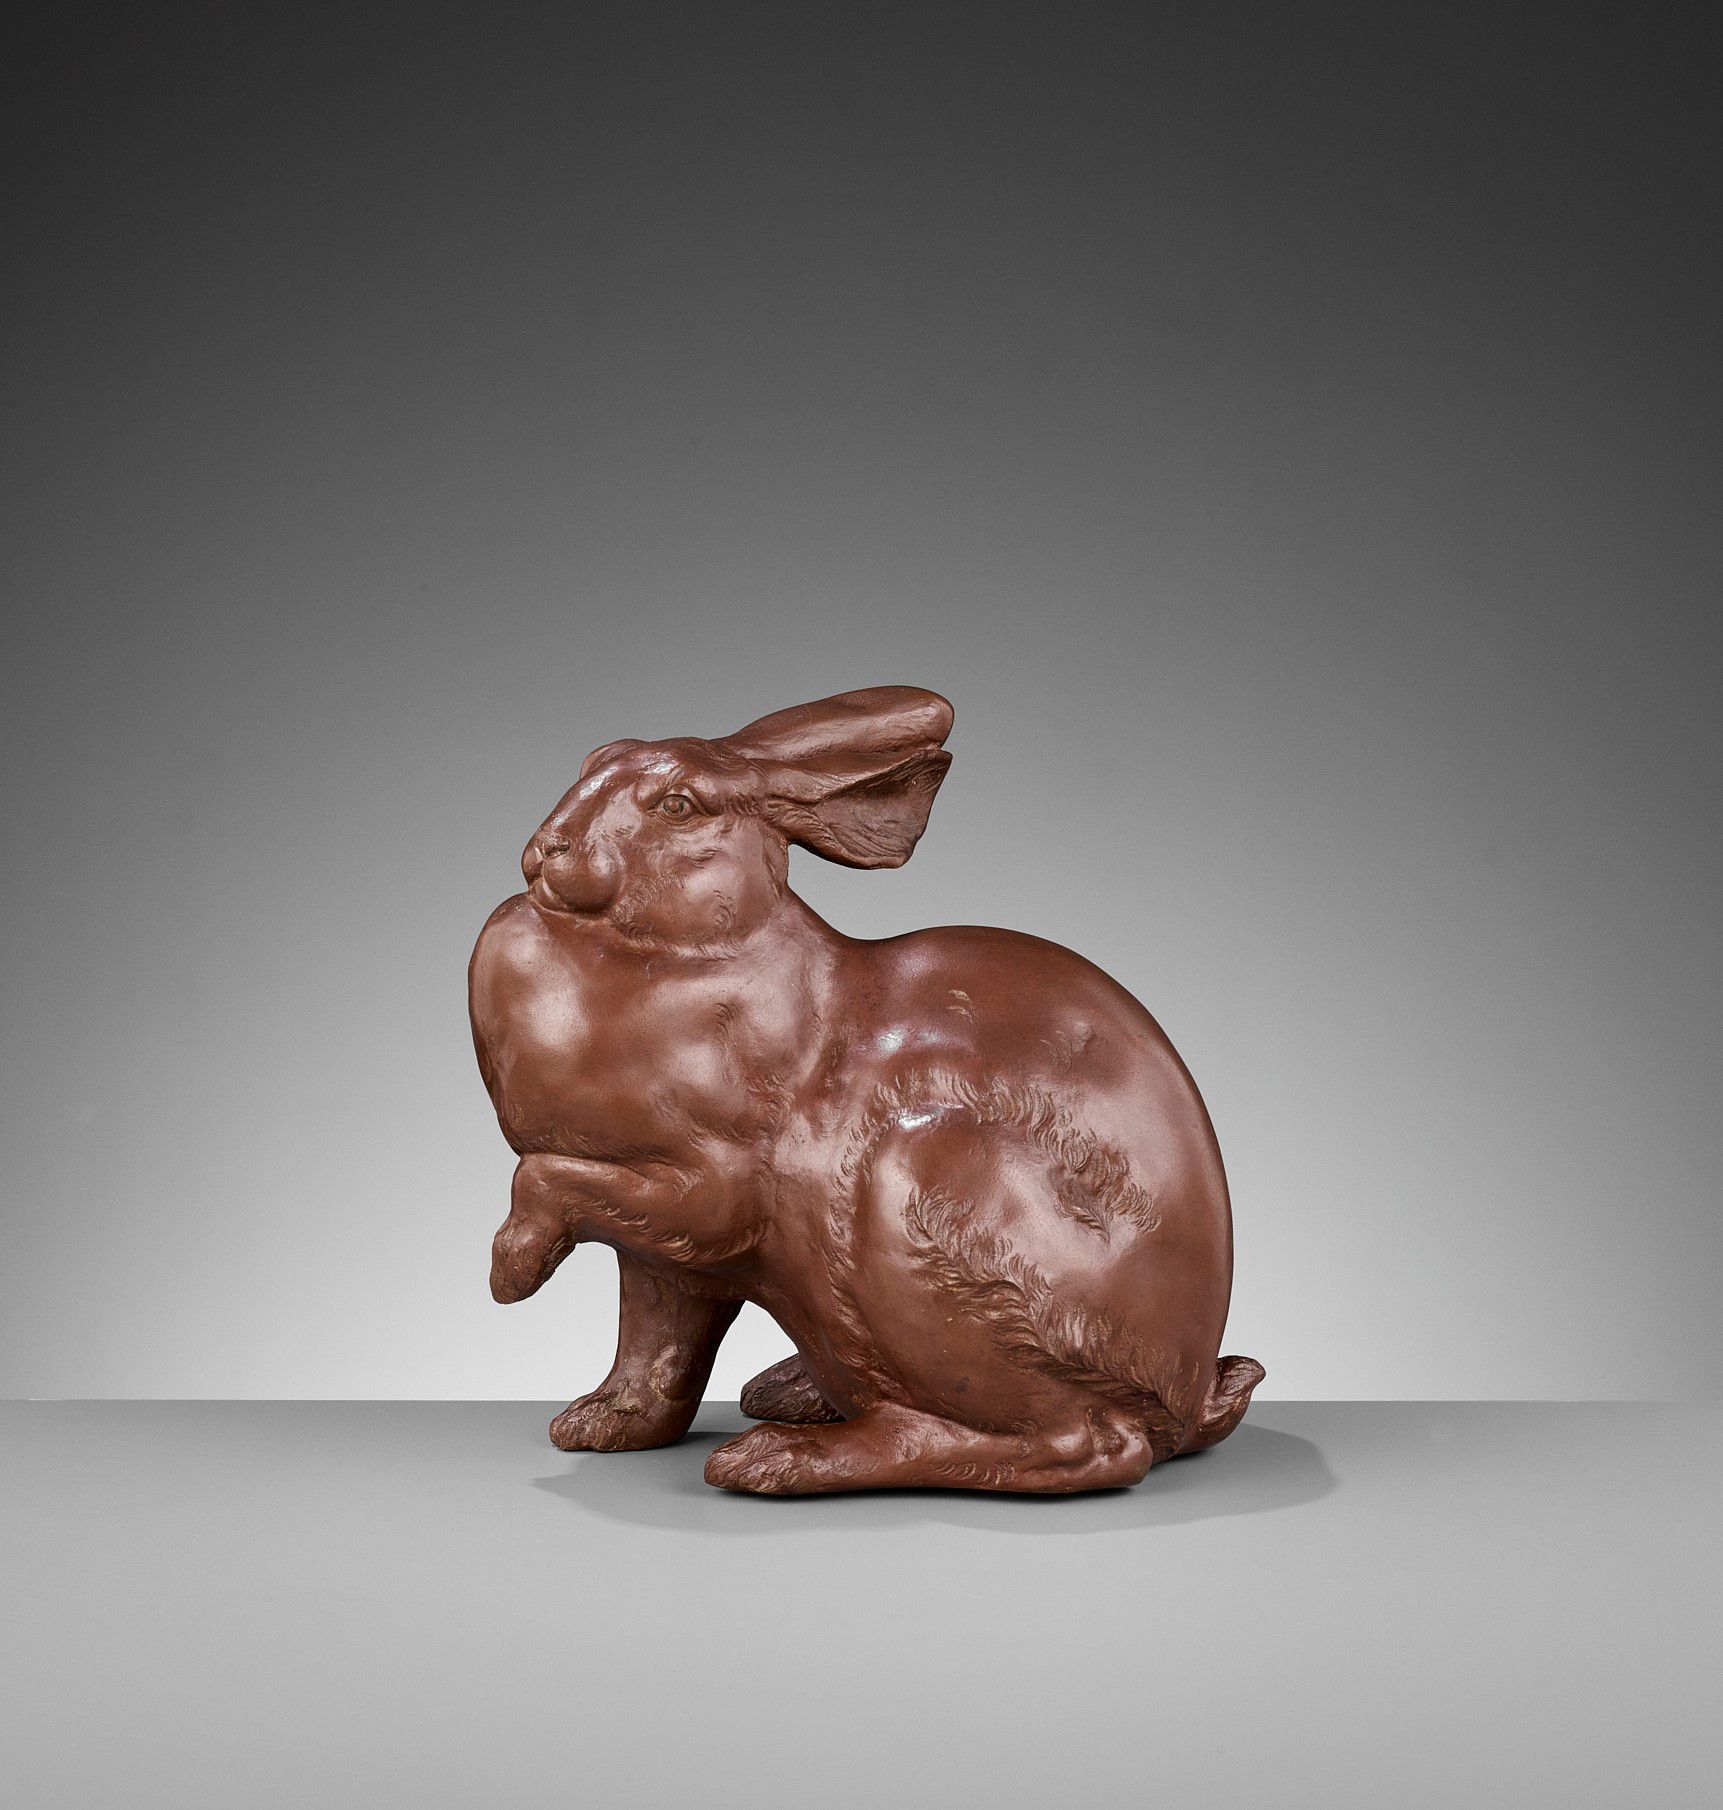 SHIHO: A FINE BRONZE OF A HARE 志保。精美的青铜兔子
渡边志保（生于1894-1972年），署名志保
日本，东京，20世纪上半叶
&hellip;